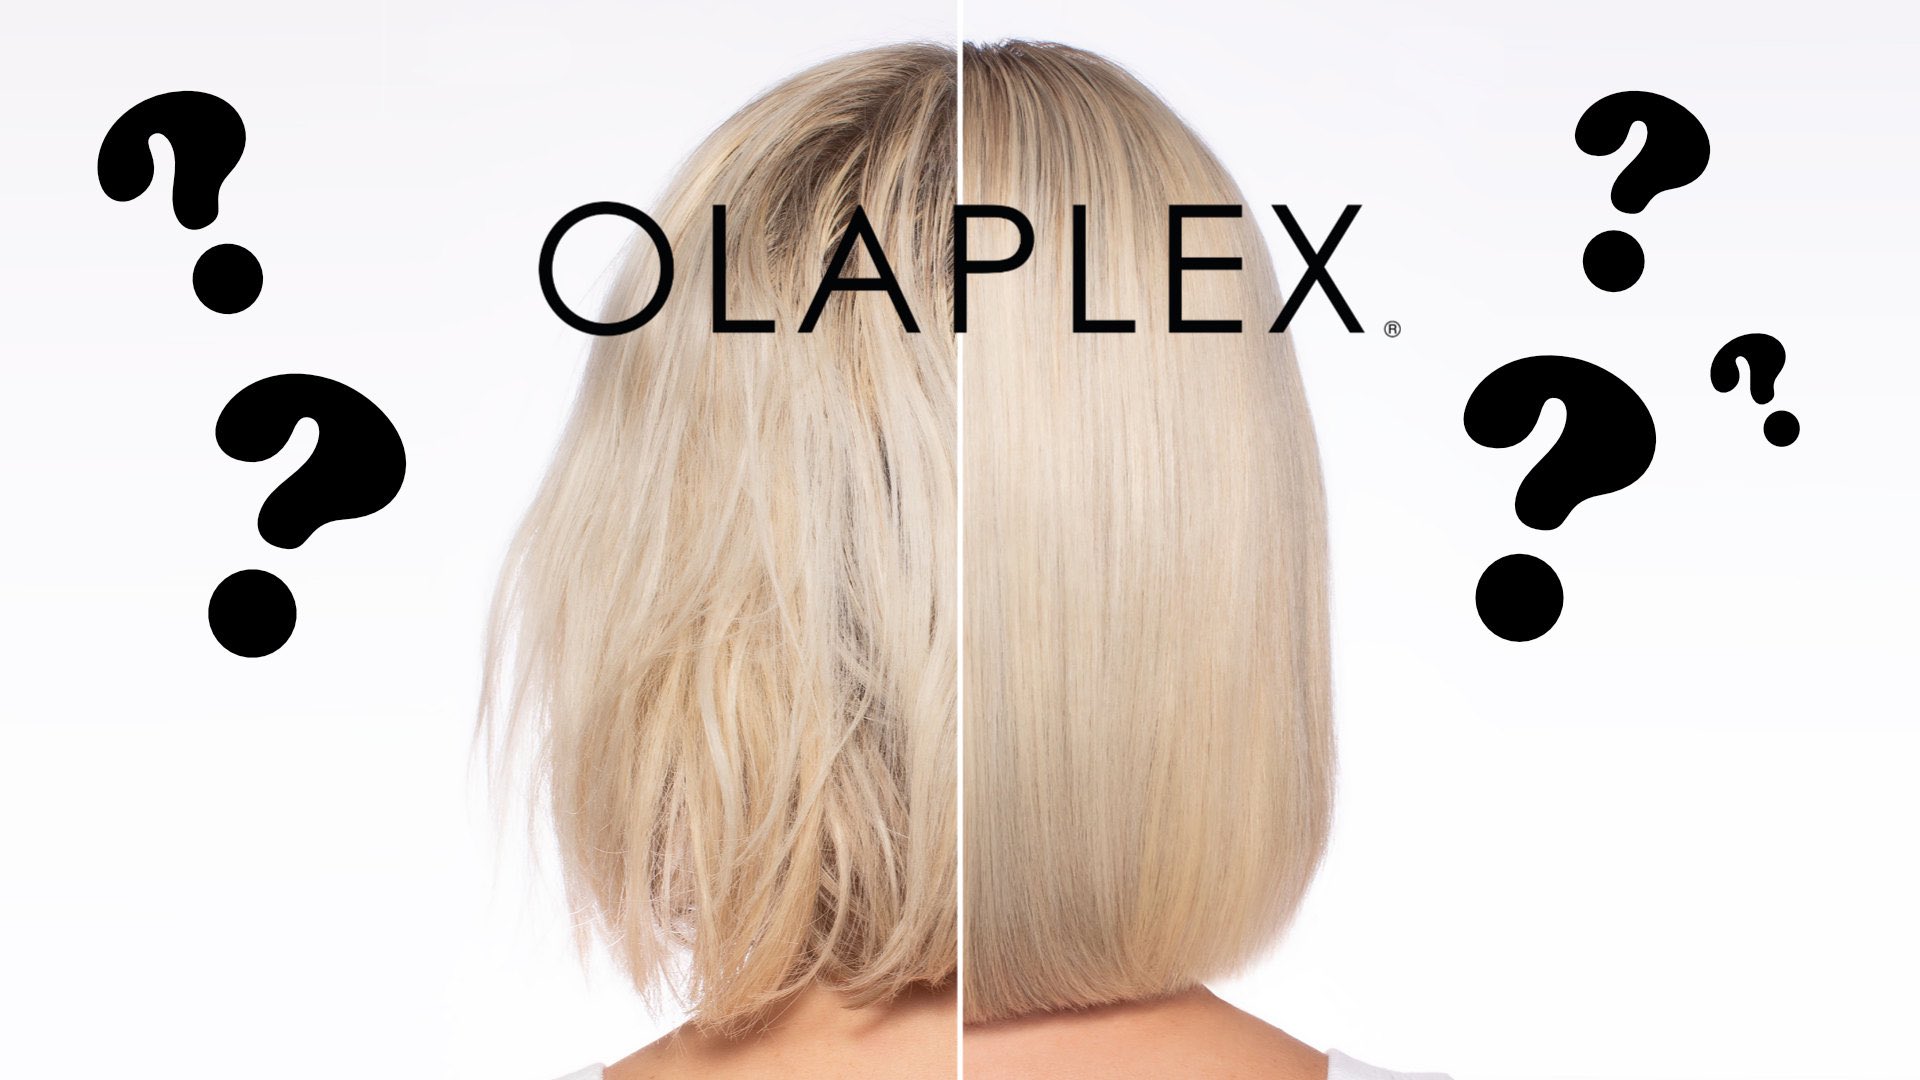 Olaplex hoito, vinkit täydelliseen hiusten hoitoon